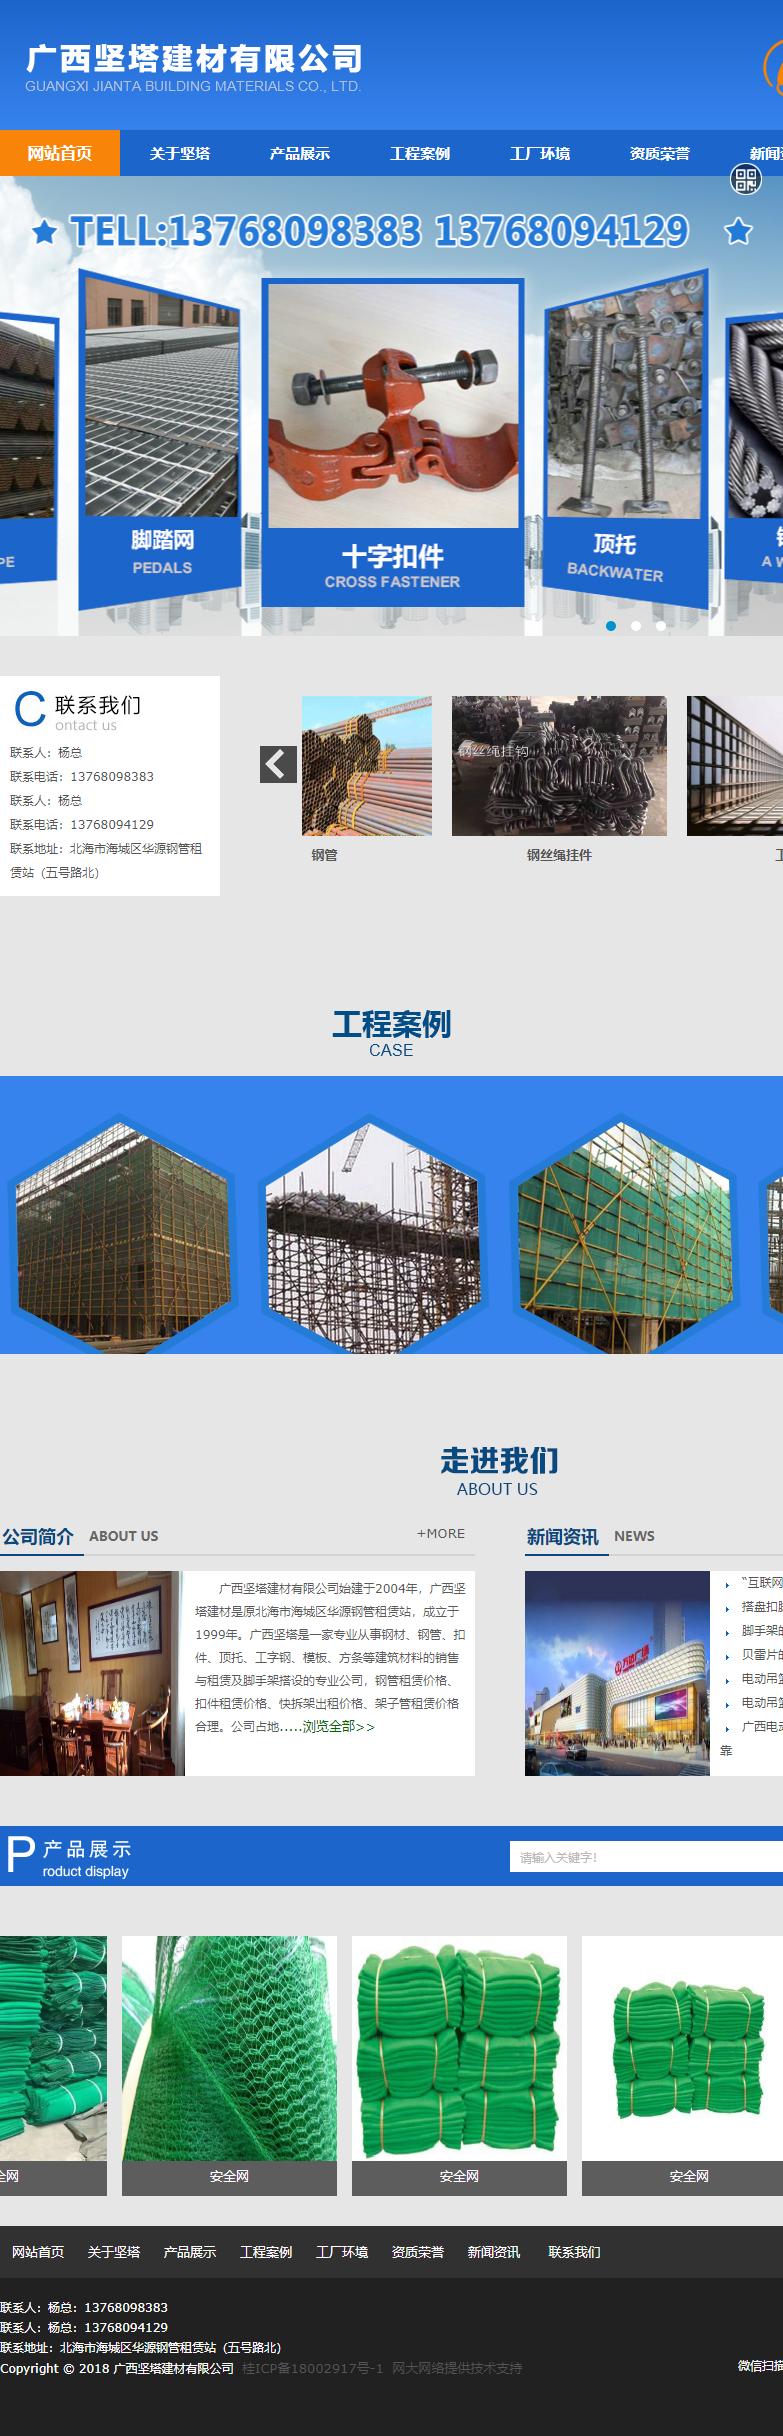 广西坚塔建材有限公司网站案例